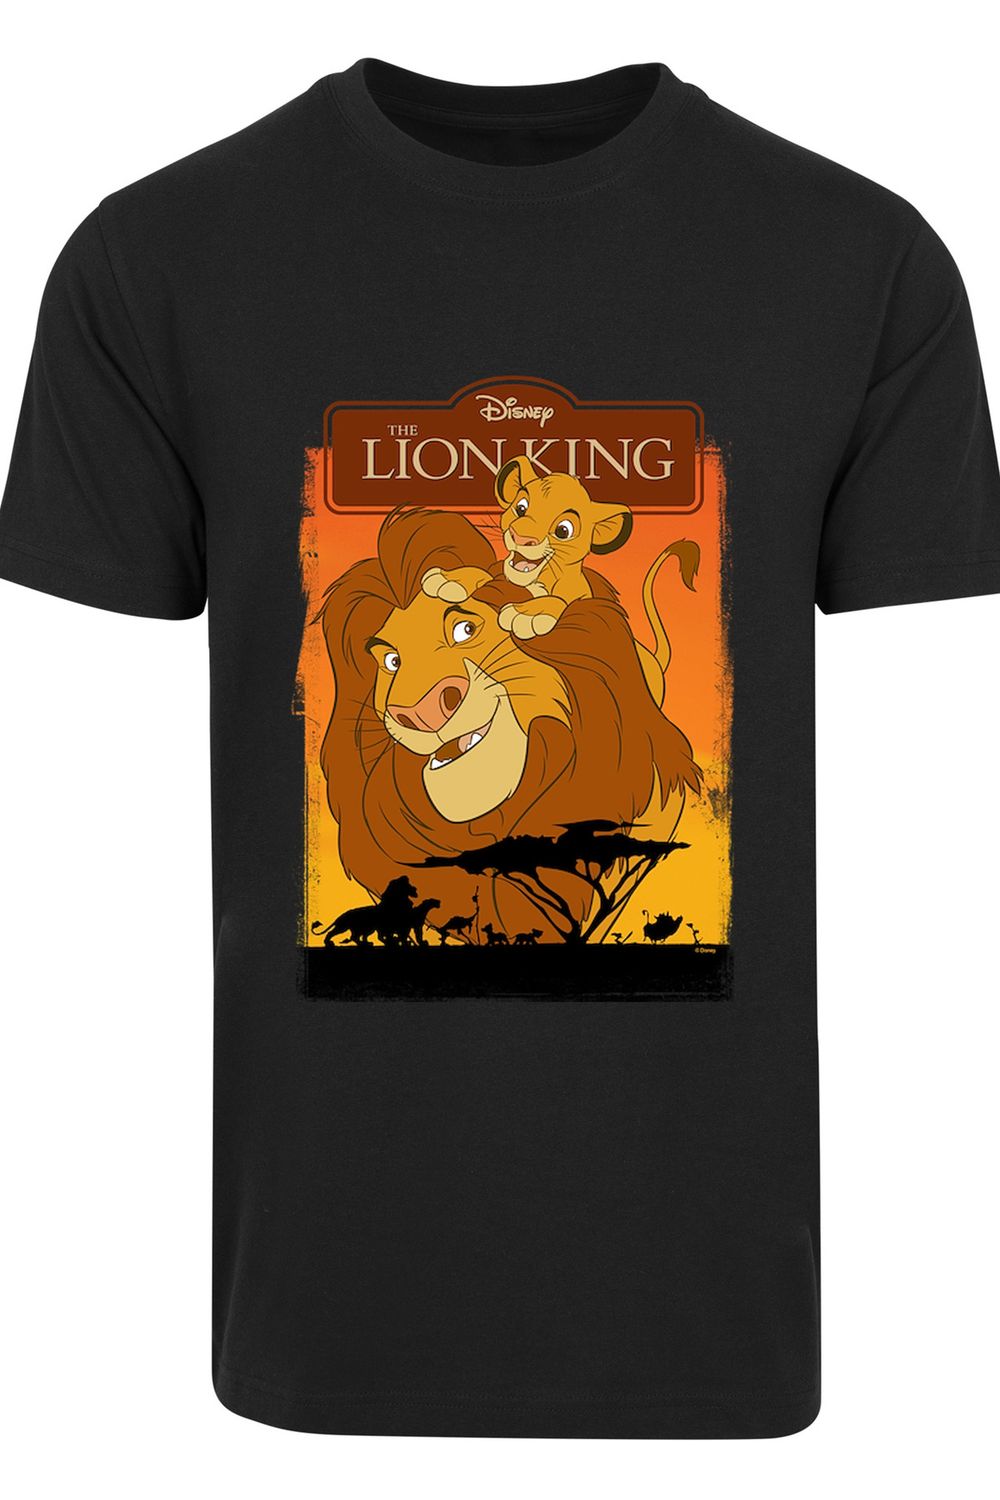 Löwen F4NT4STIC Simba Trendyol Disney König der Herren mit Rundhals Der Mufasa T-Shirt - und